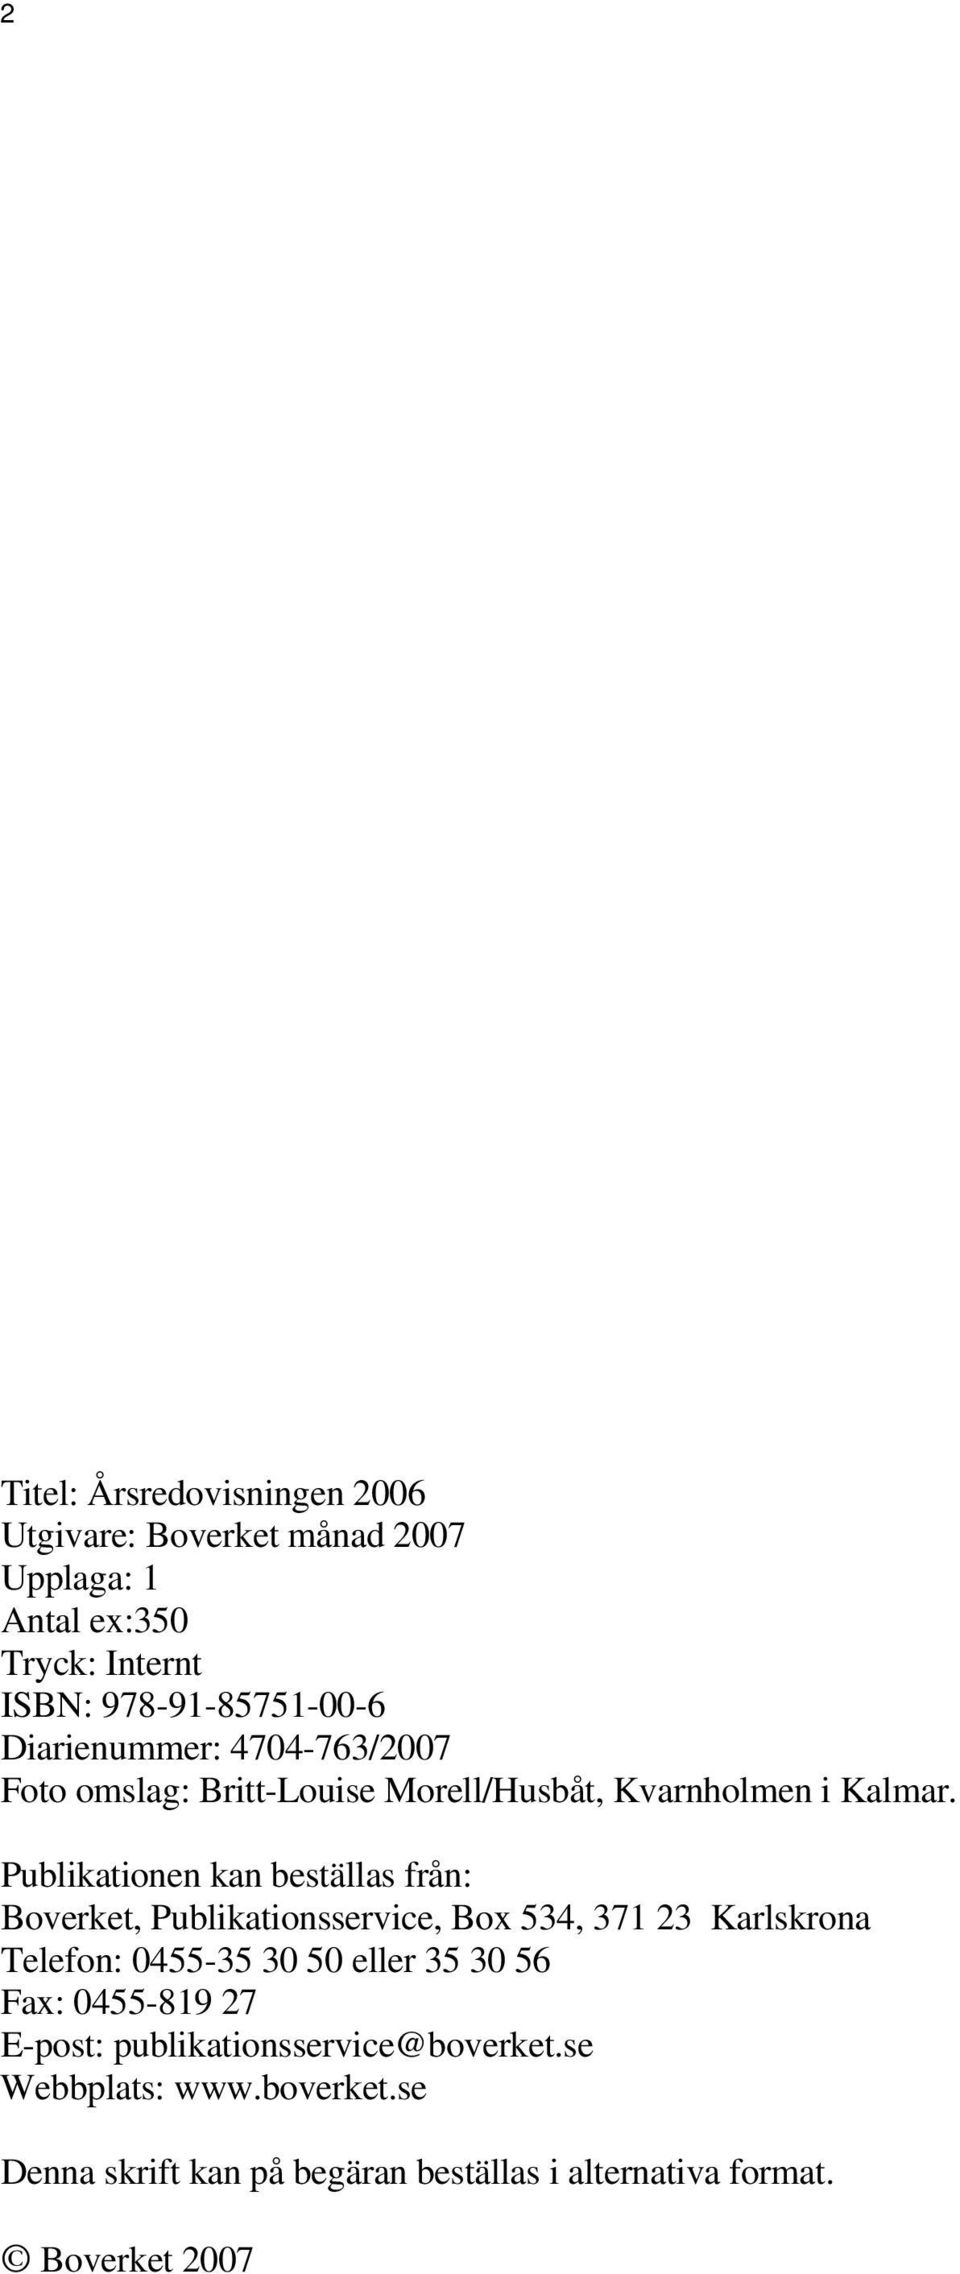 Publikationen kan beställas från: Boverket, Publikationsservice, Box 534, 371 23 Karlskrona Telefon: 0455-35 30 50 eller 35